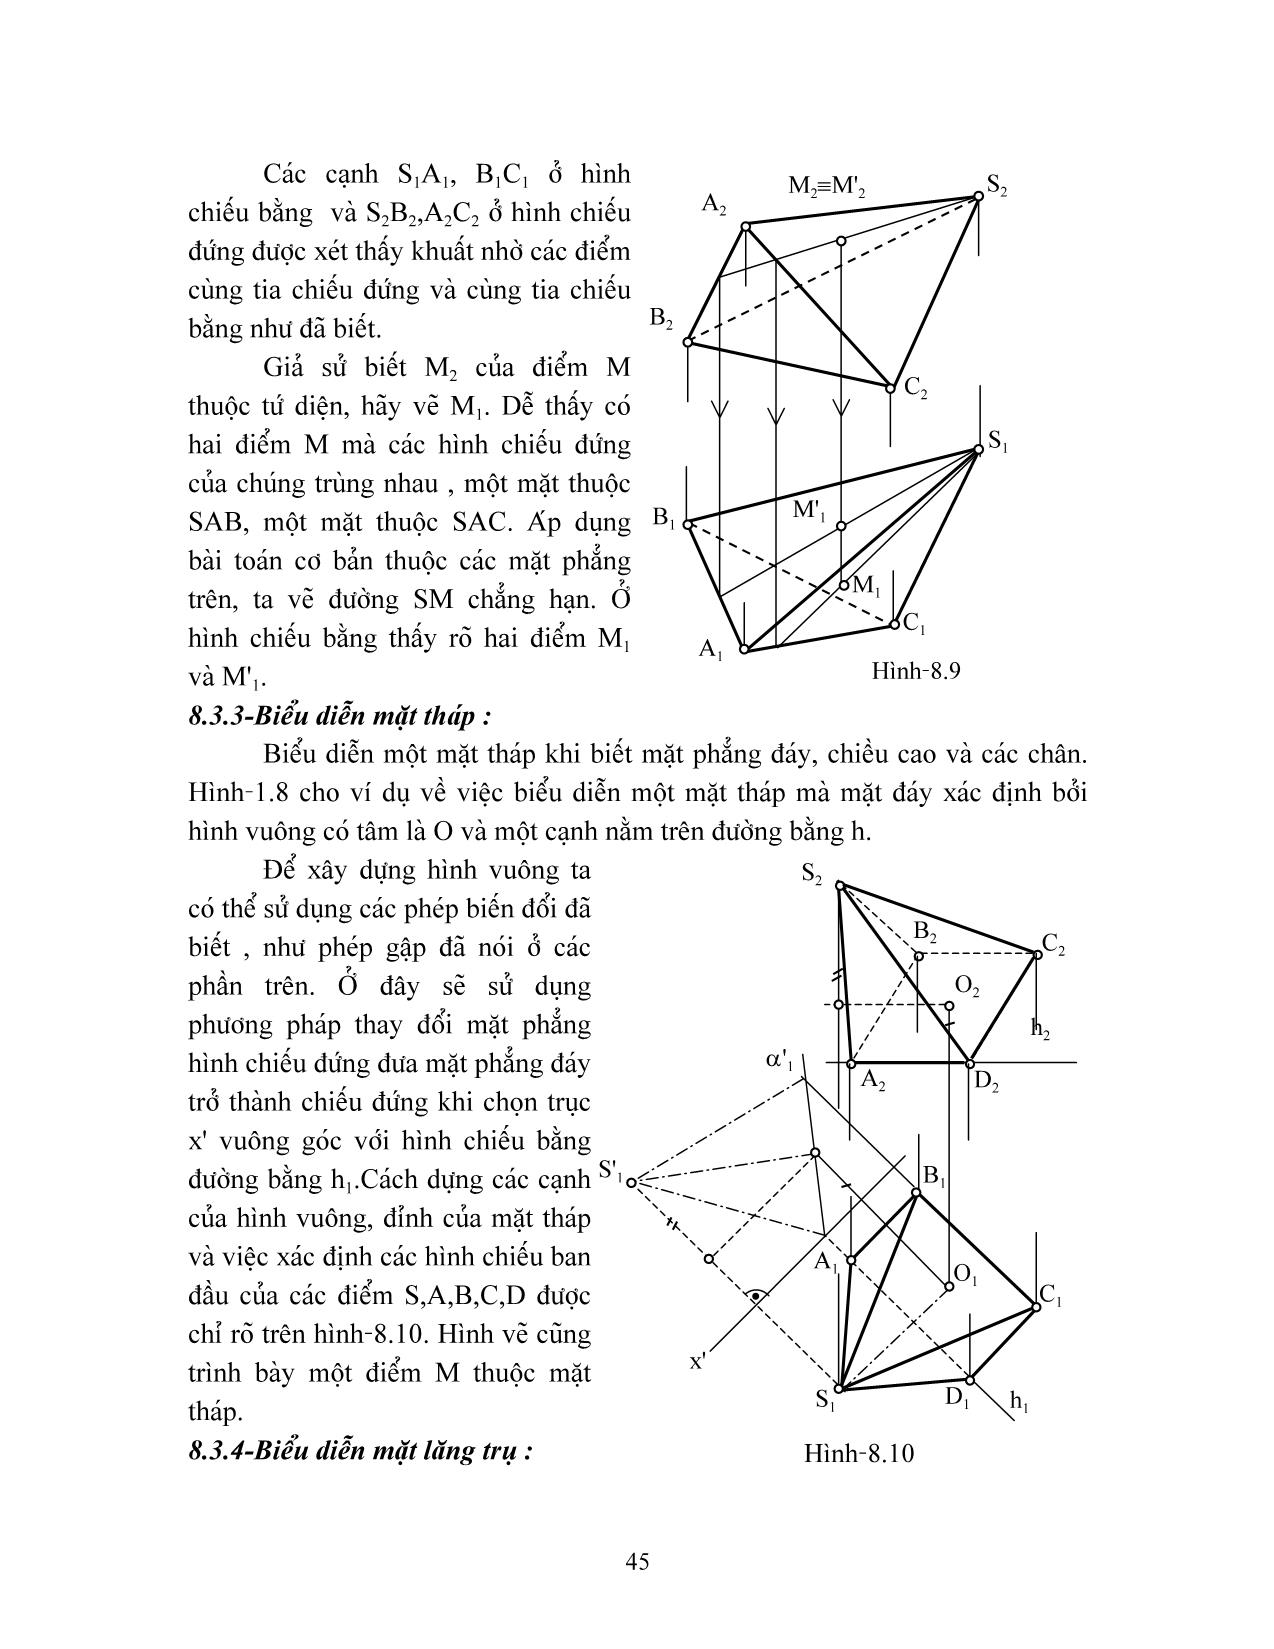 Giáo trình Hình học họa hình (Phần 2) trang 5